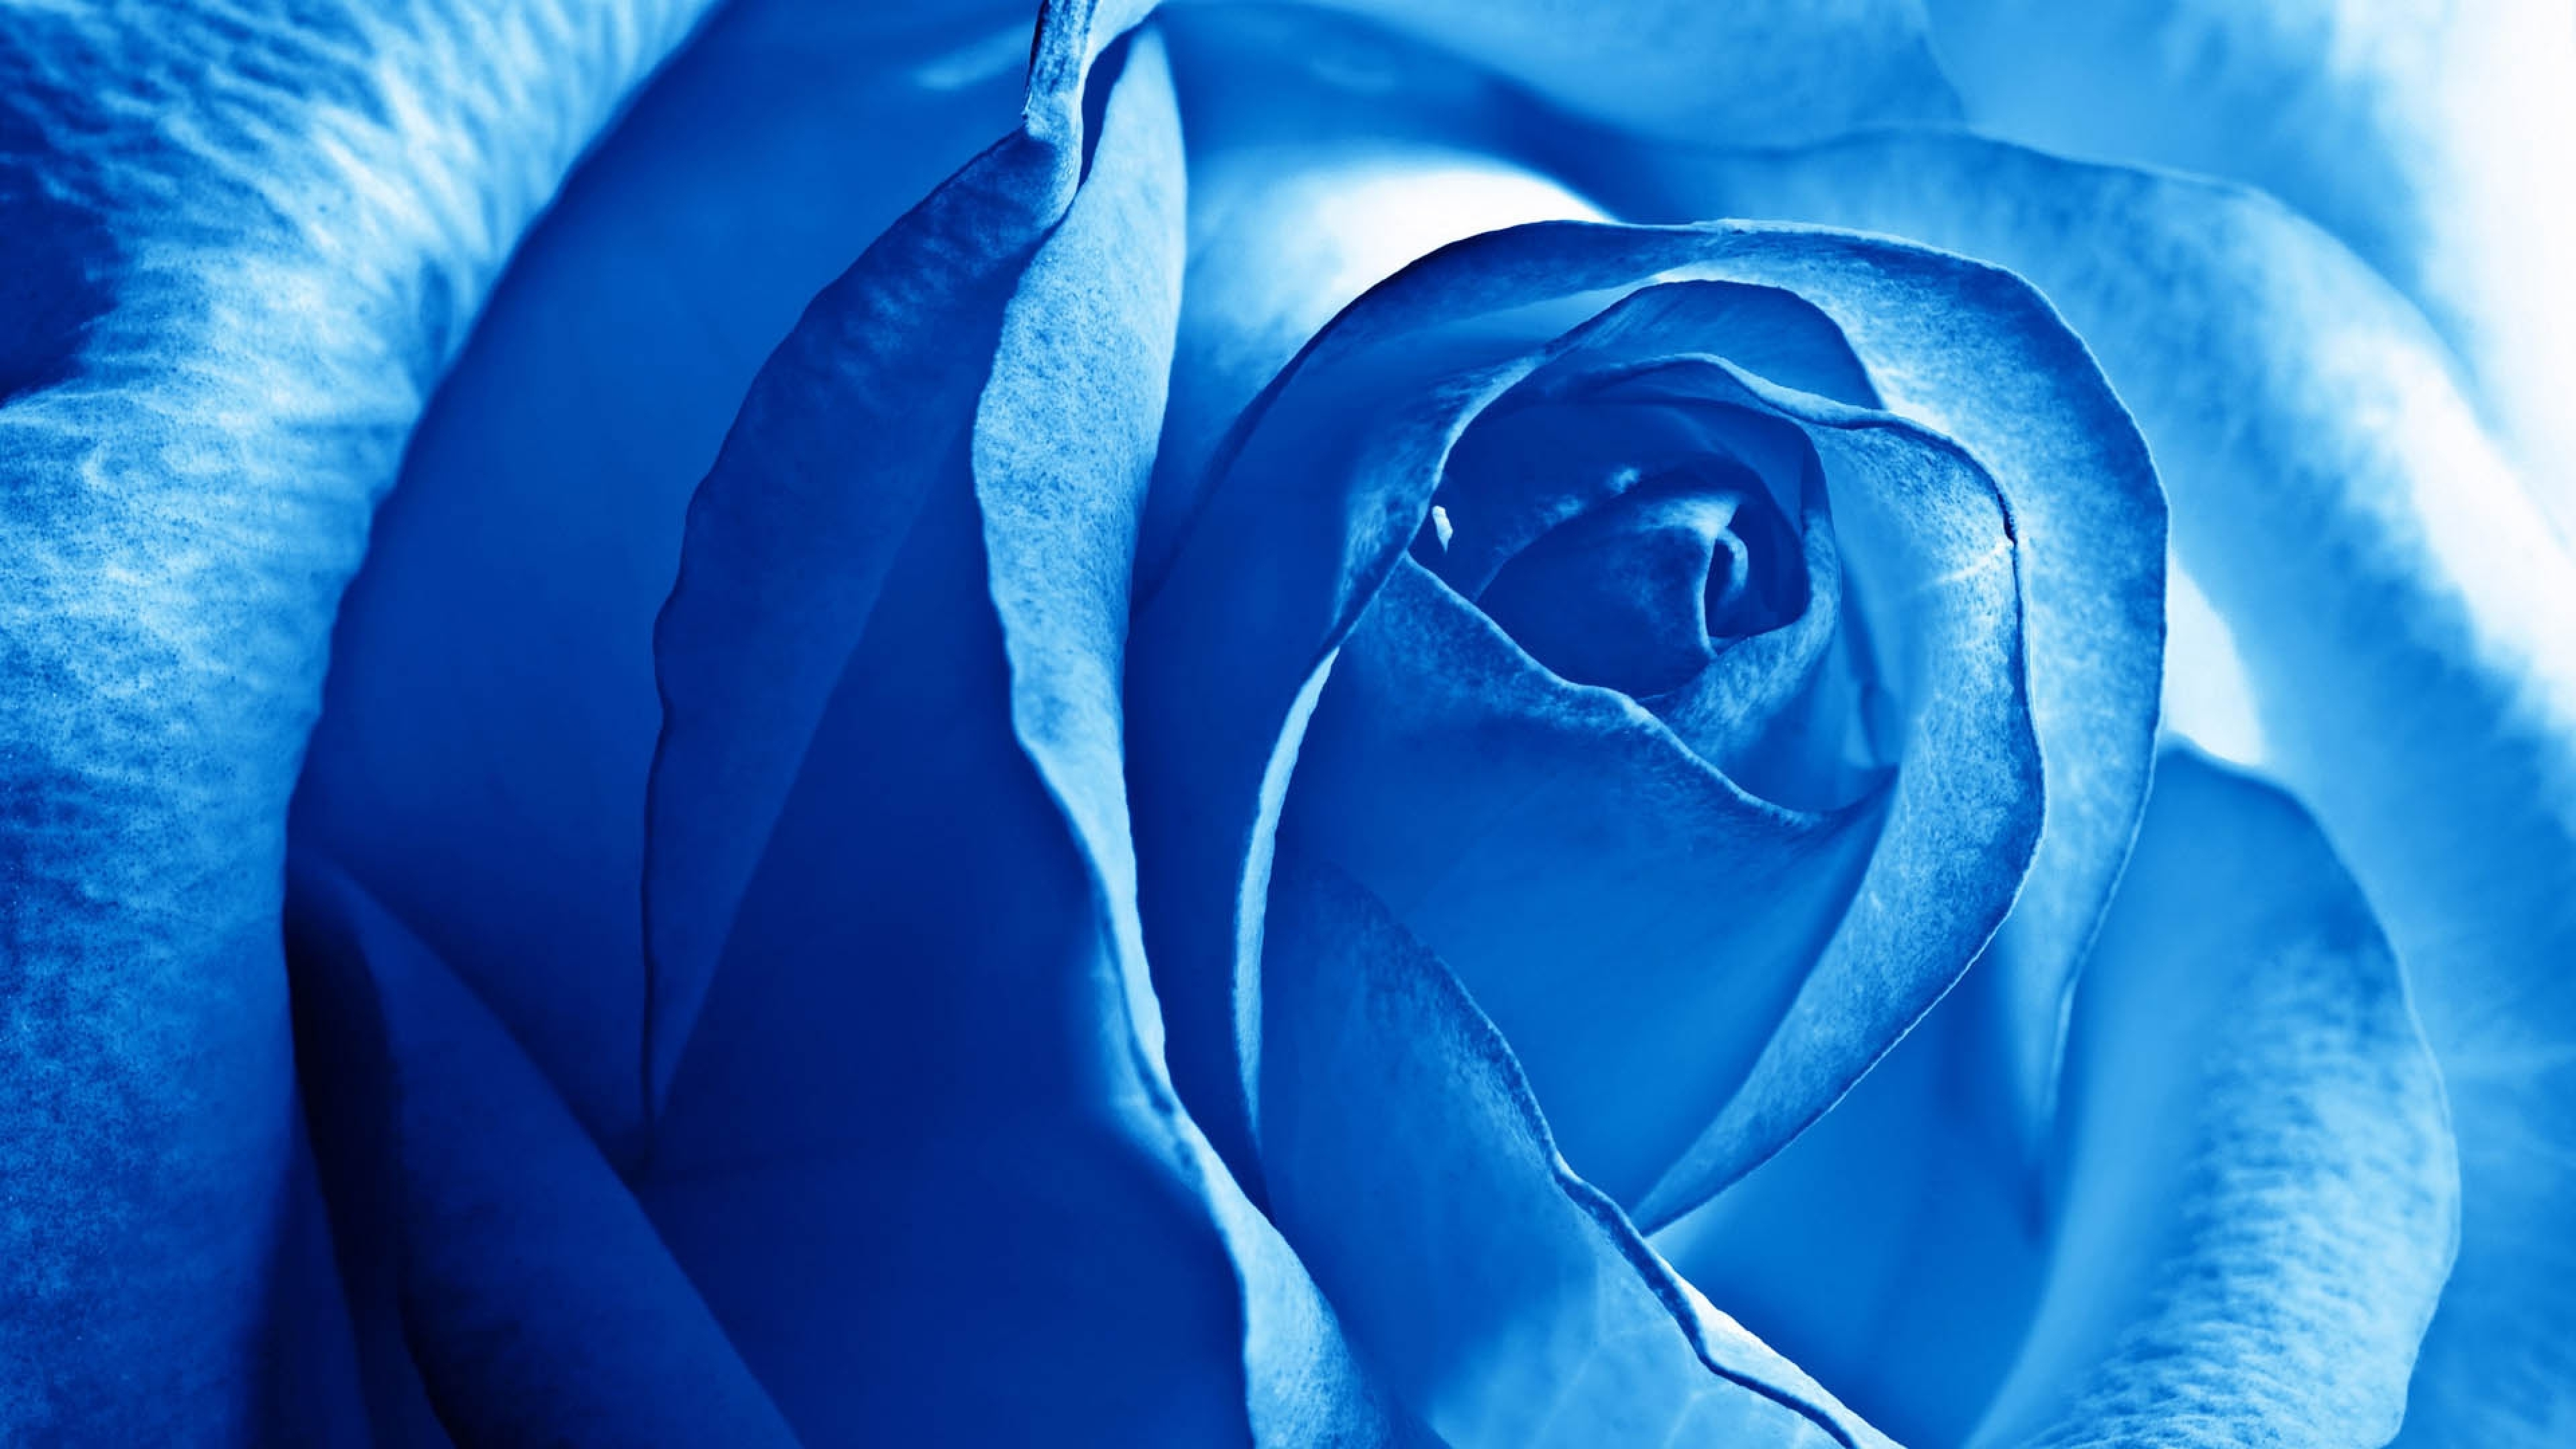 light blue rose wallpaper